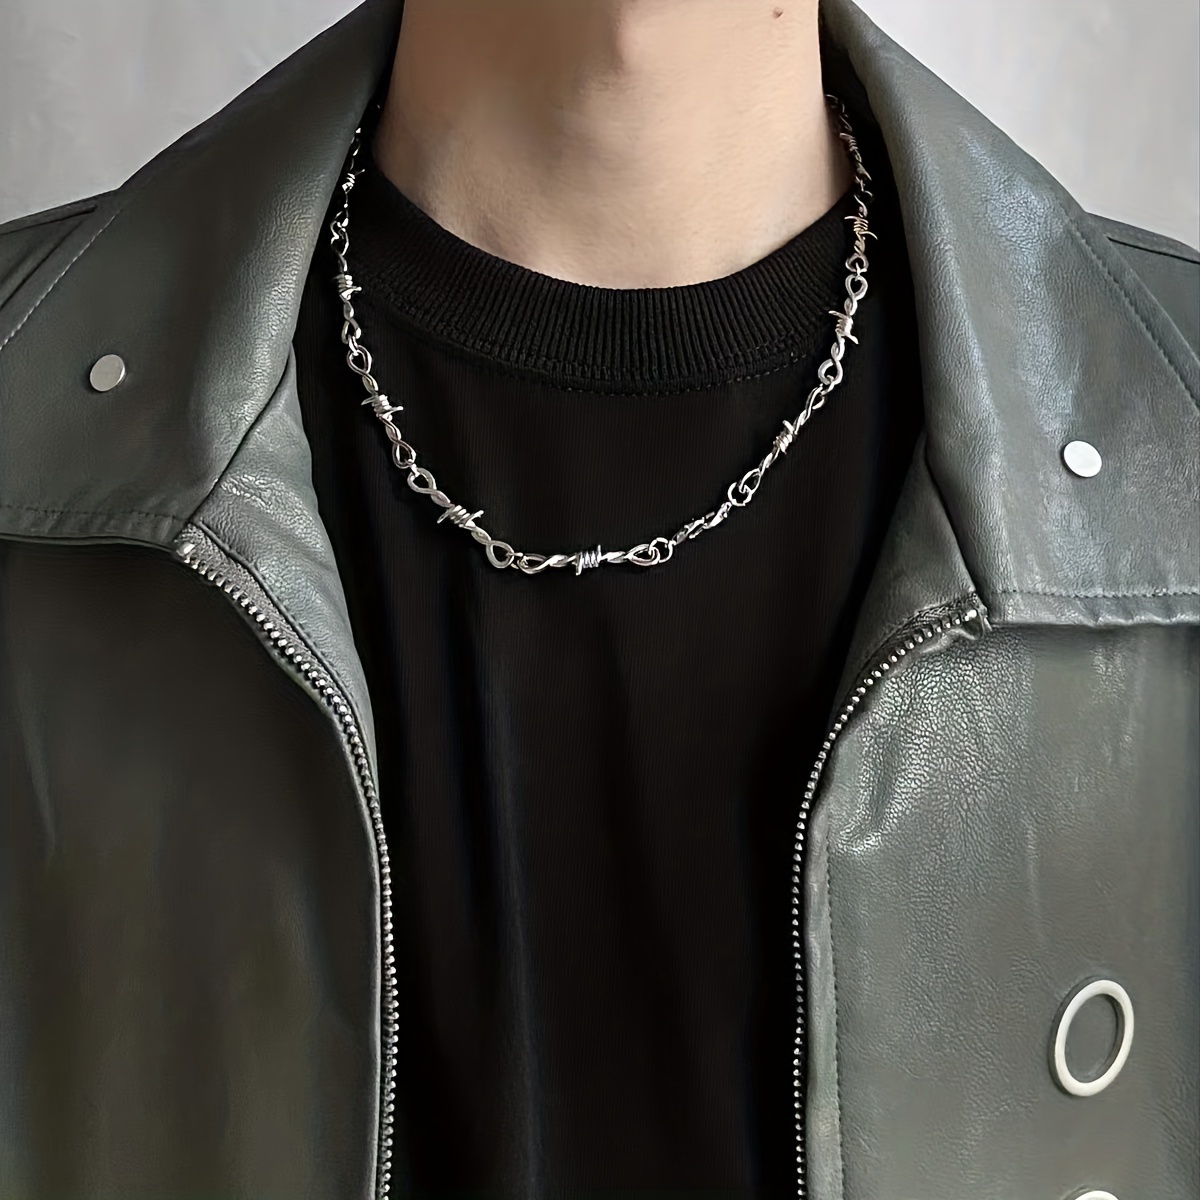 Men's Necklace - Men's Choker Necklace - Men's Leather Necklace - Men's  Jewelry - Men's Gift